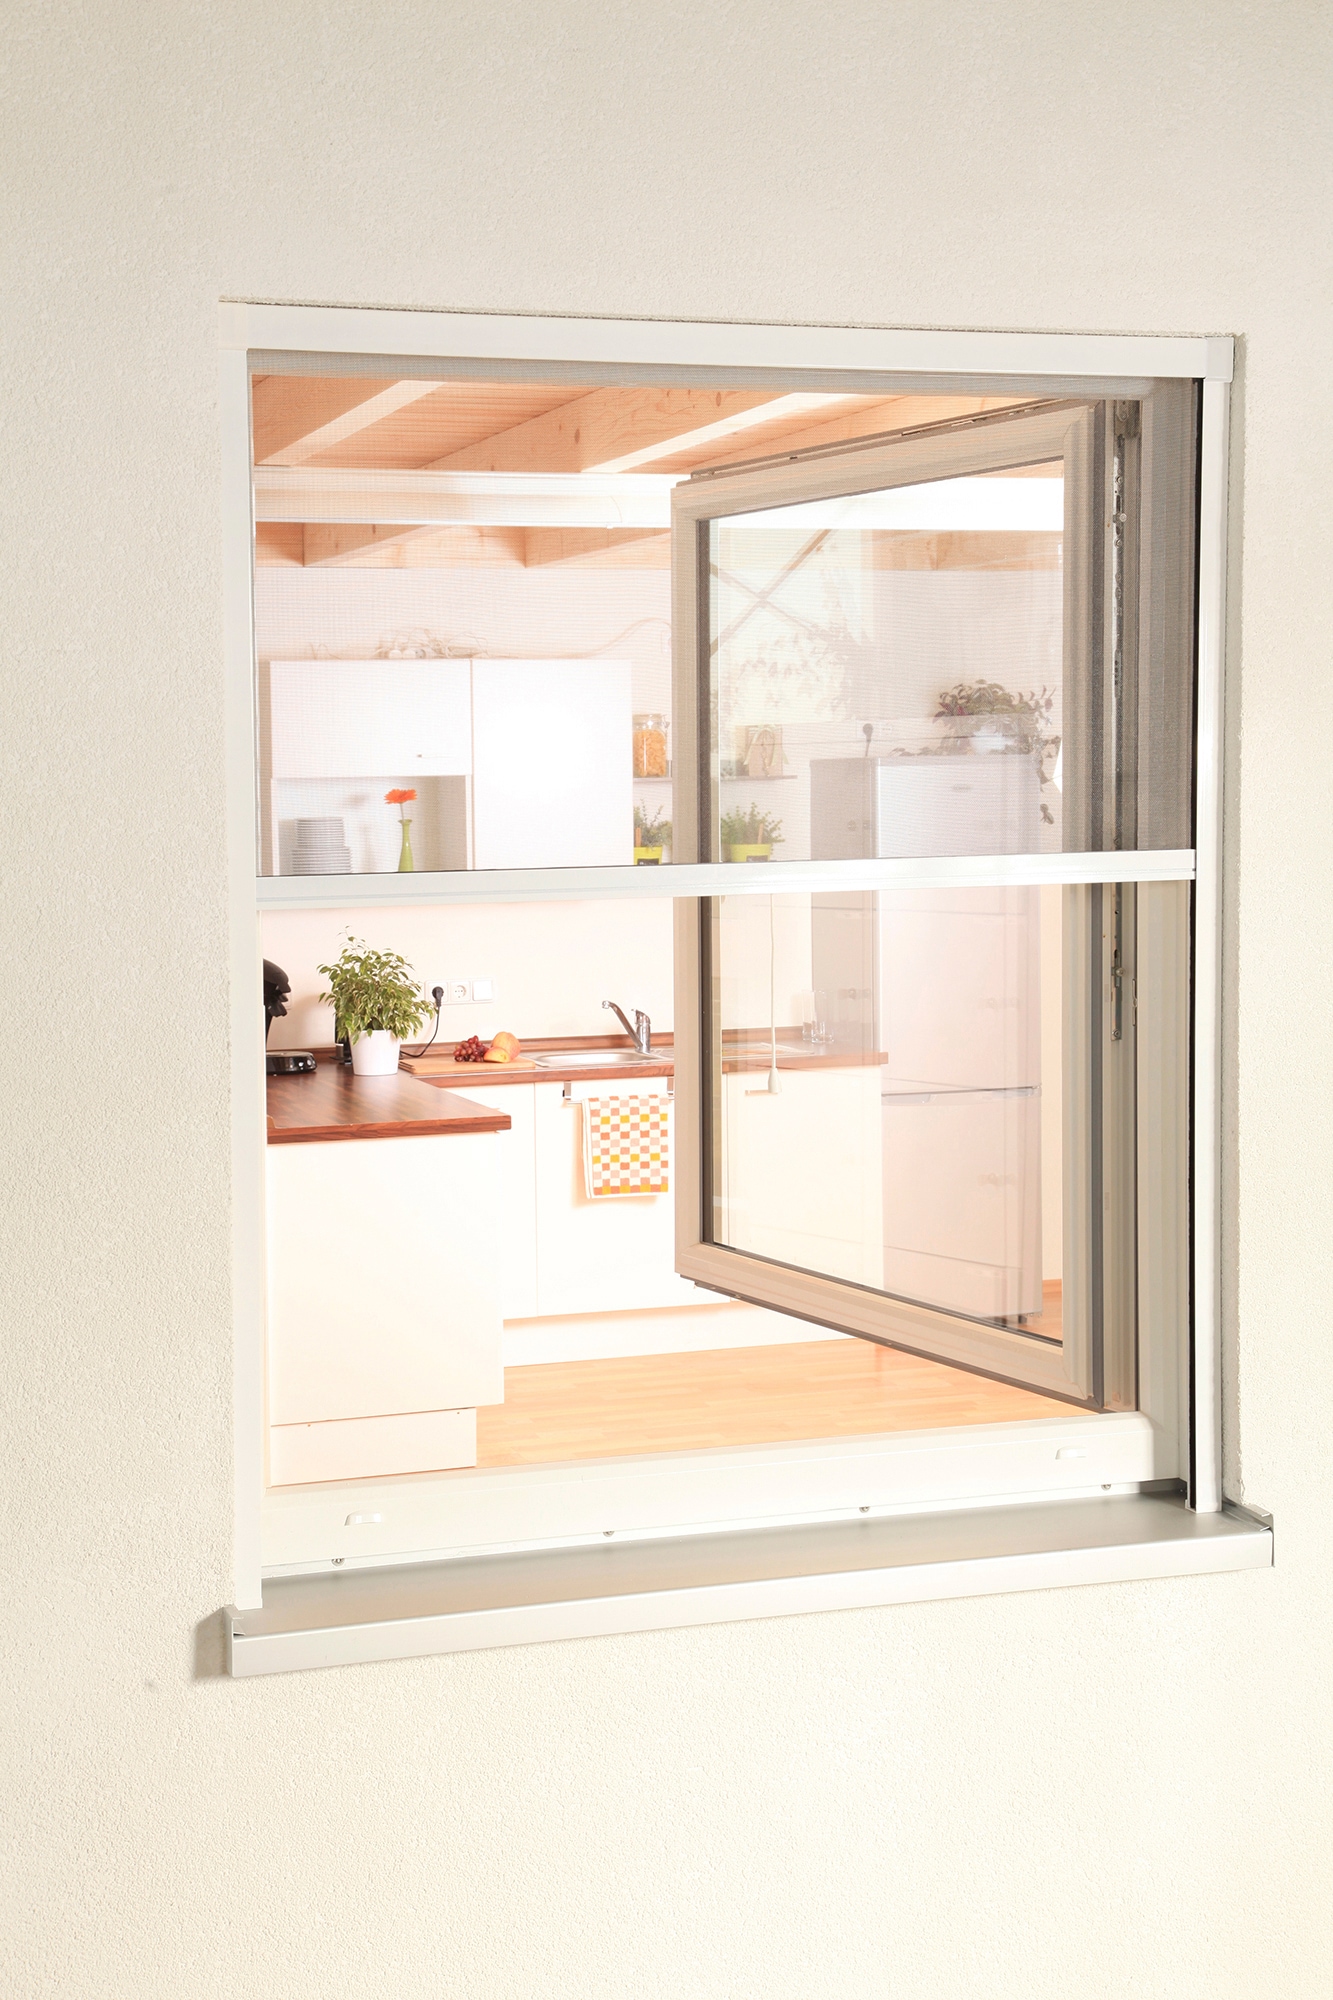 hecht international Insektenschutzrollo »SMART«, transparent, für Fenster, weiß/anthrazit, BxH: 130x160 cm